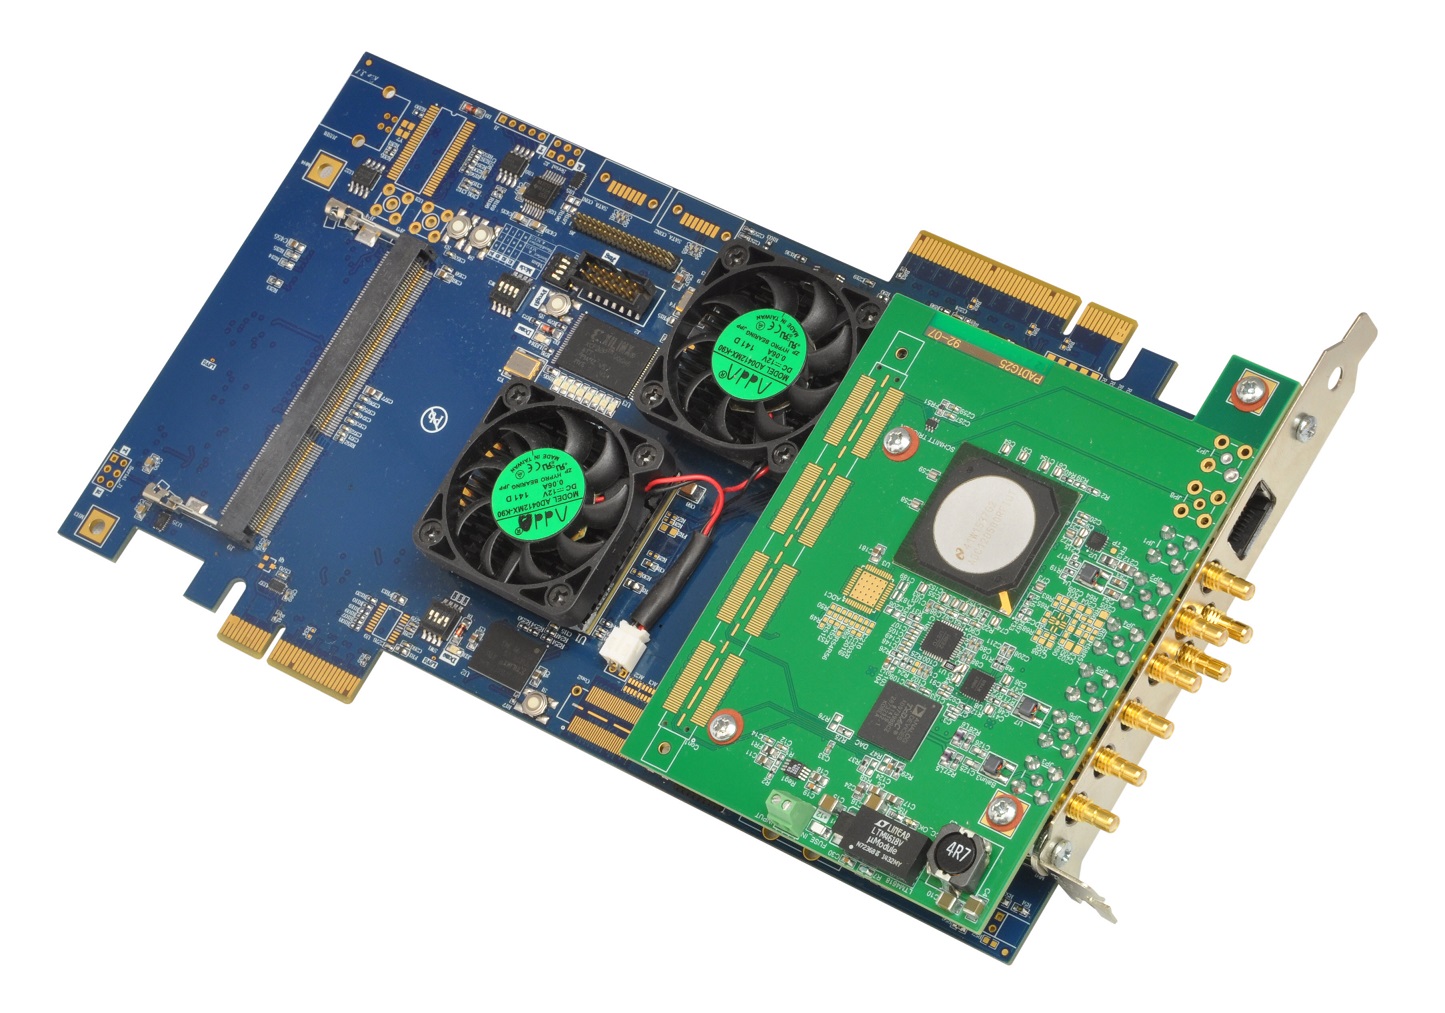 برد پردازشی Virtex-6 LX240T, PCIe